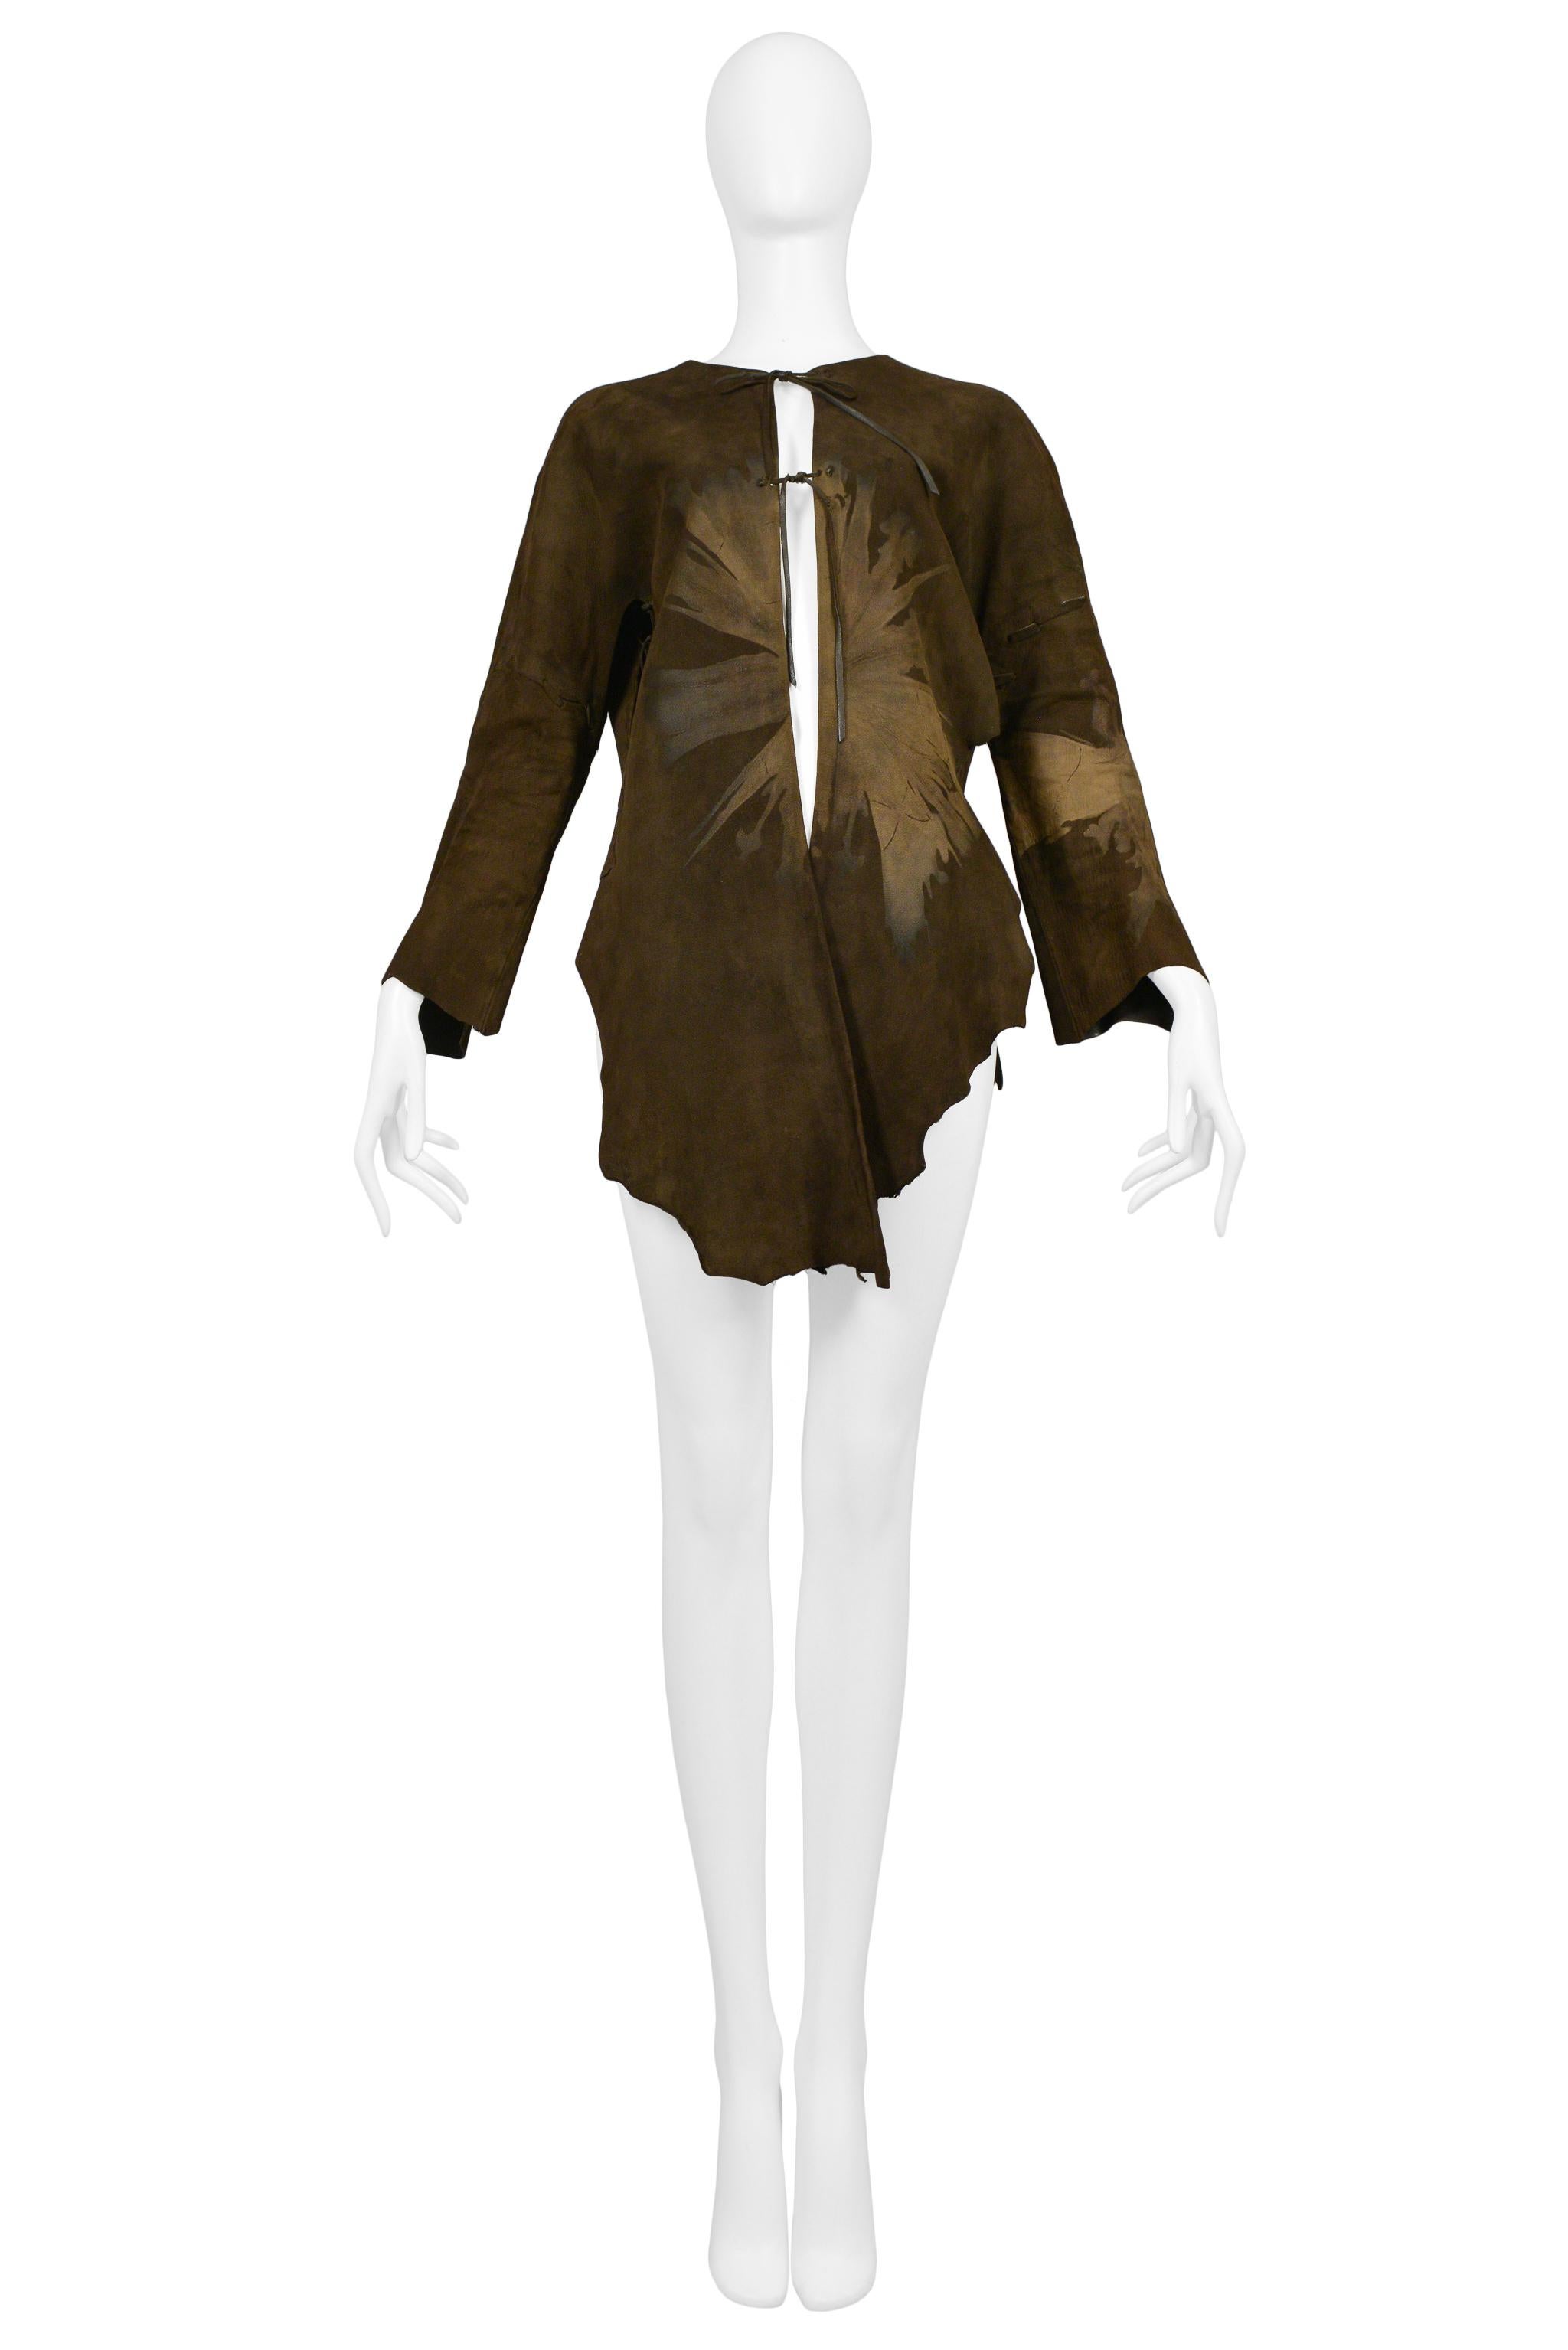 Resurrection Vintage a le plaisir de vous proposer un ensemble veste et jupe vintage en daim marron de Giorgio Sant Angelo comprenant un imprimé de feuilles abstraites, une veste avec des liens sur le devant et des bords bruts, et une jupe avec des